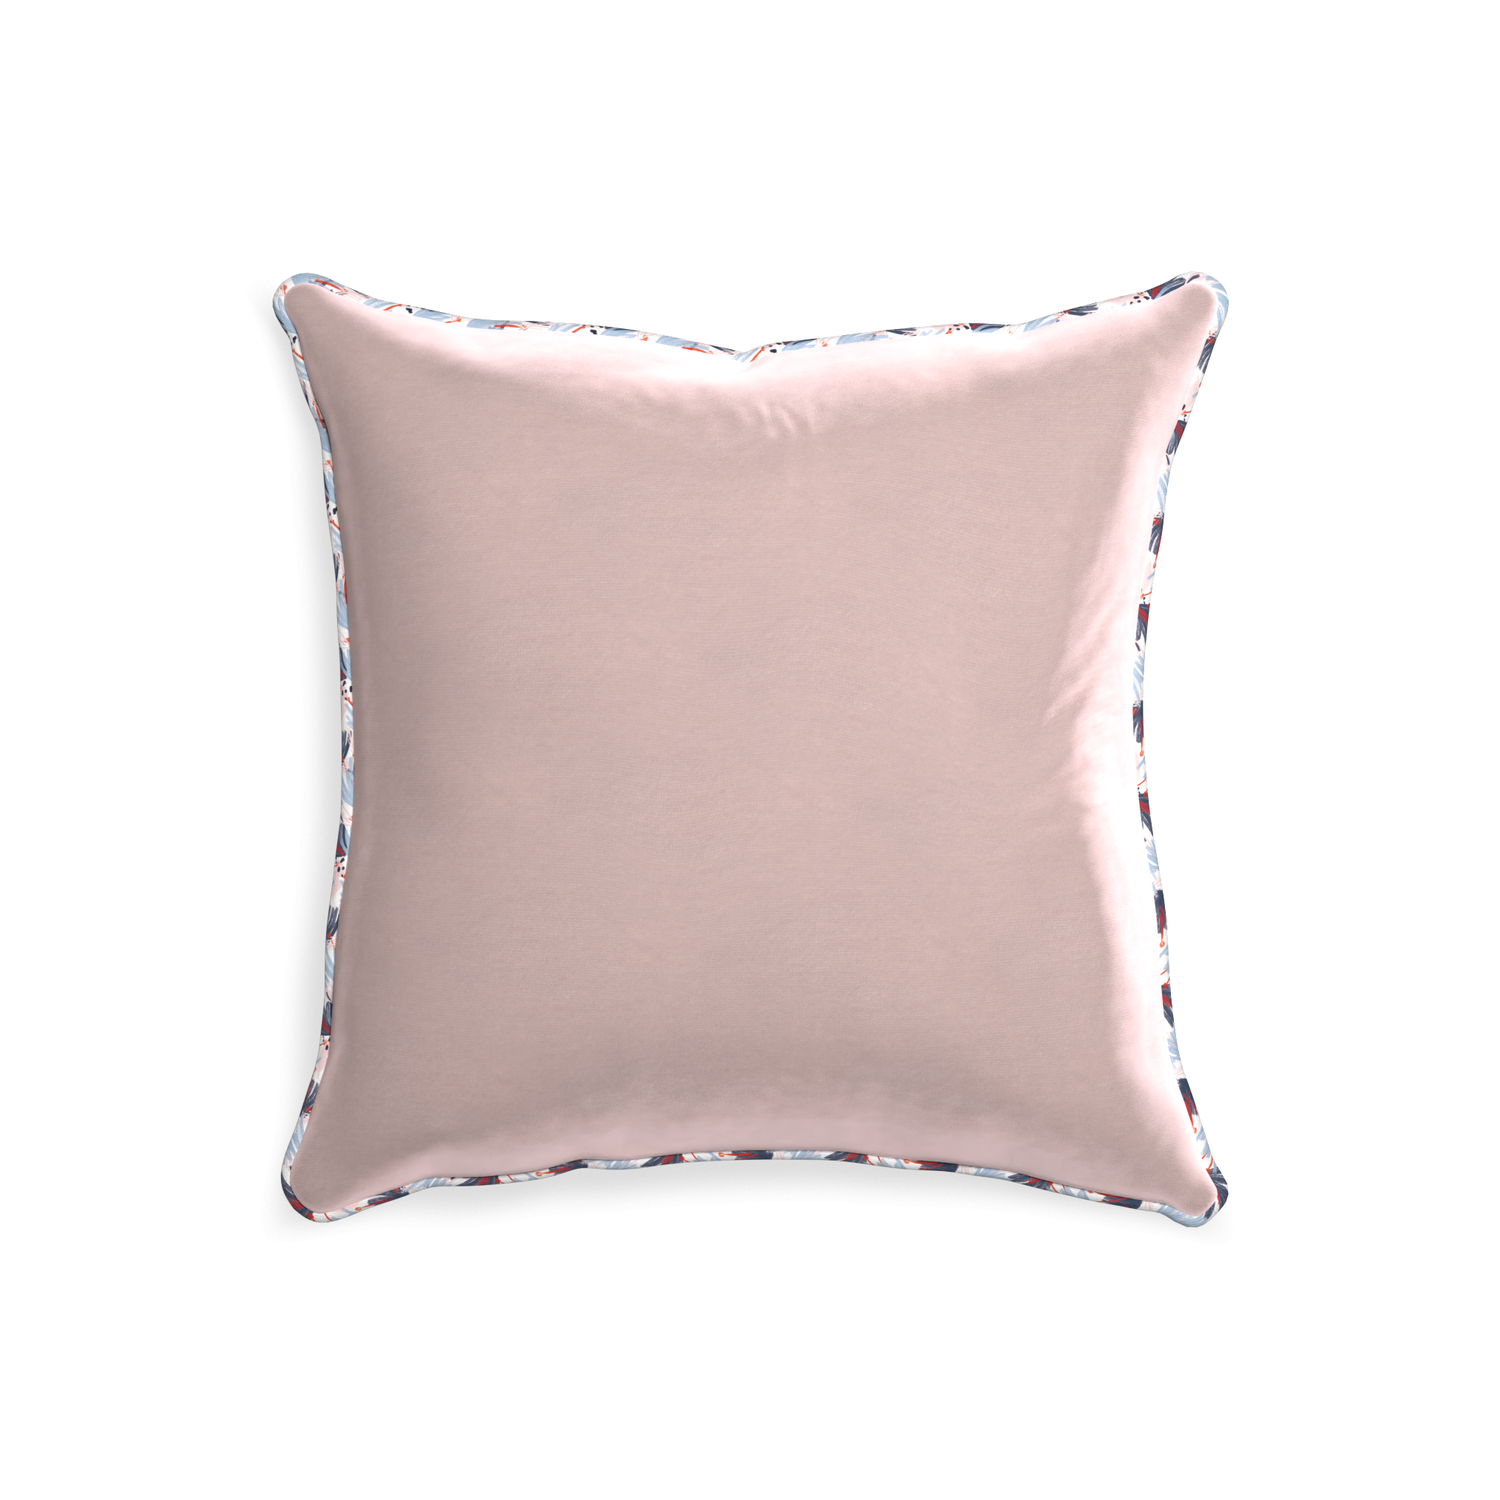 20-square rose velvet custom pillow with e piping on white background